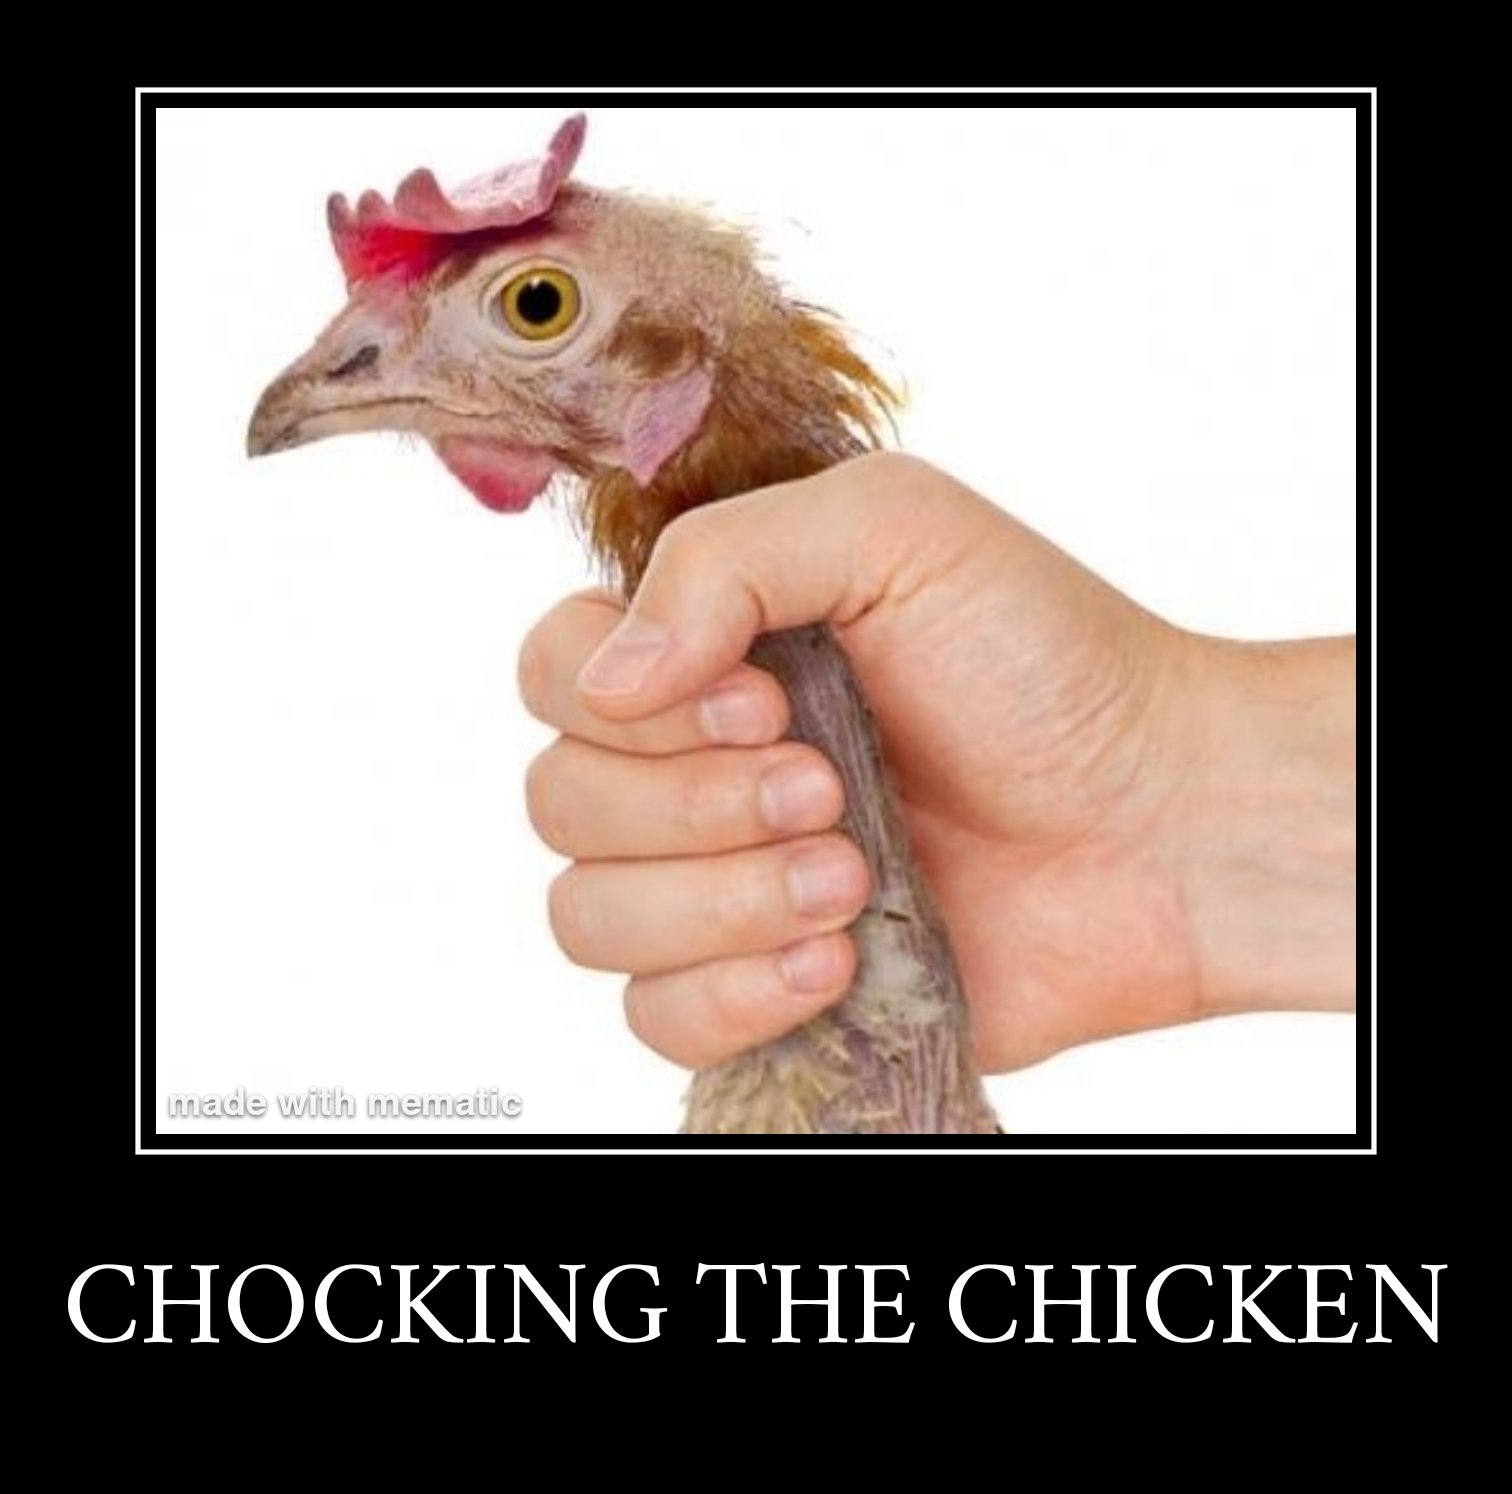 Chocking the chicken